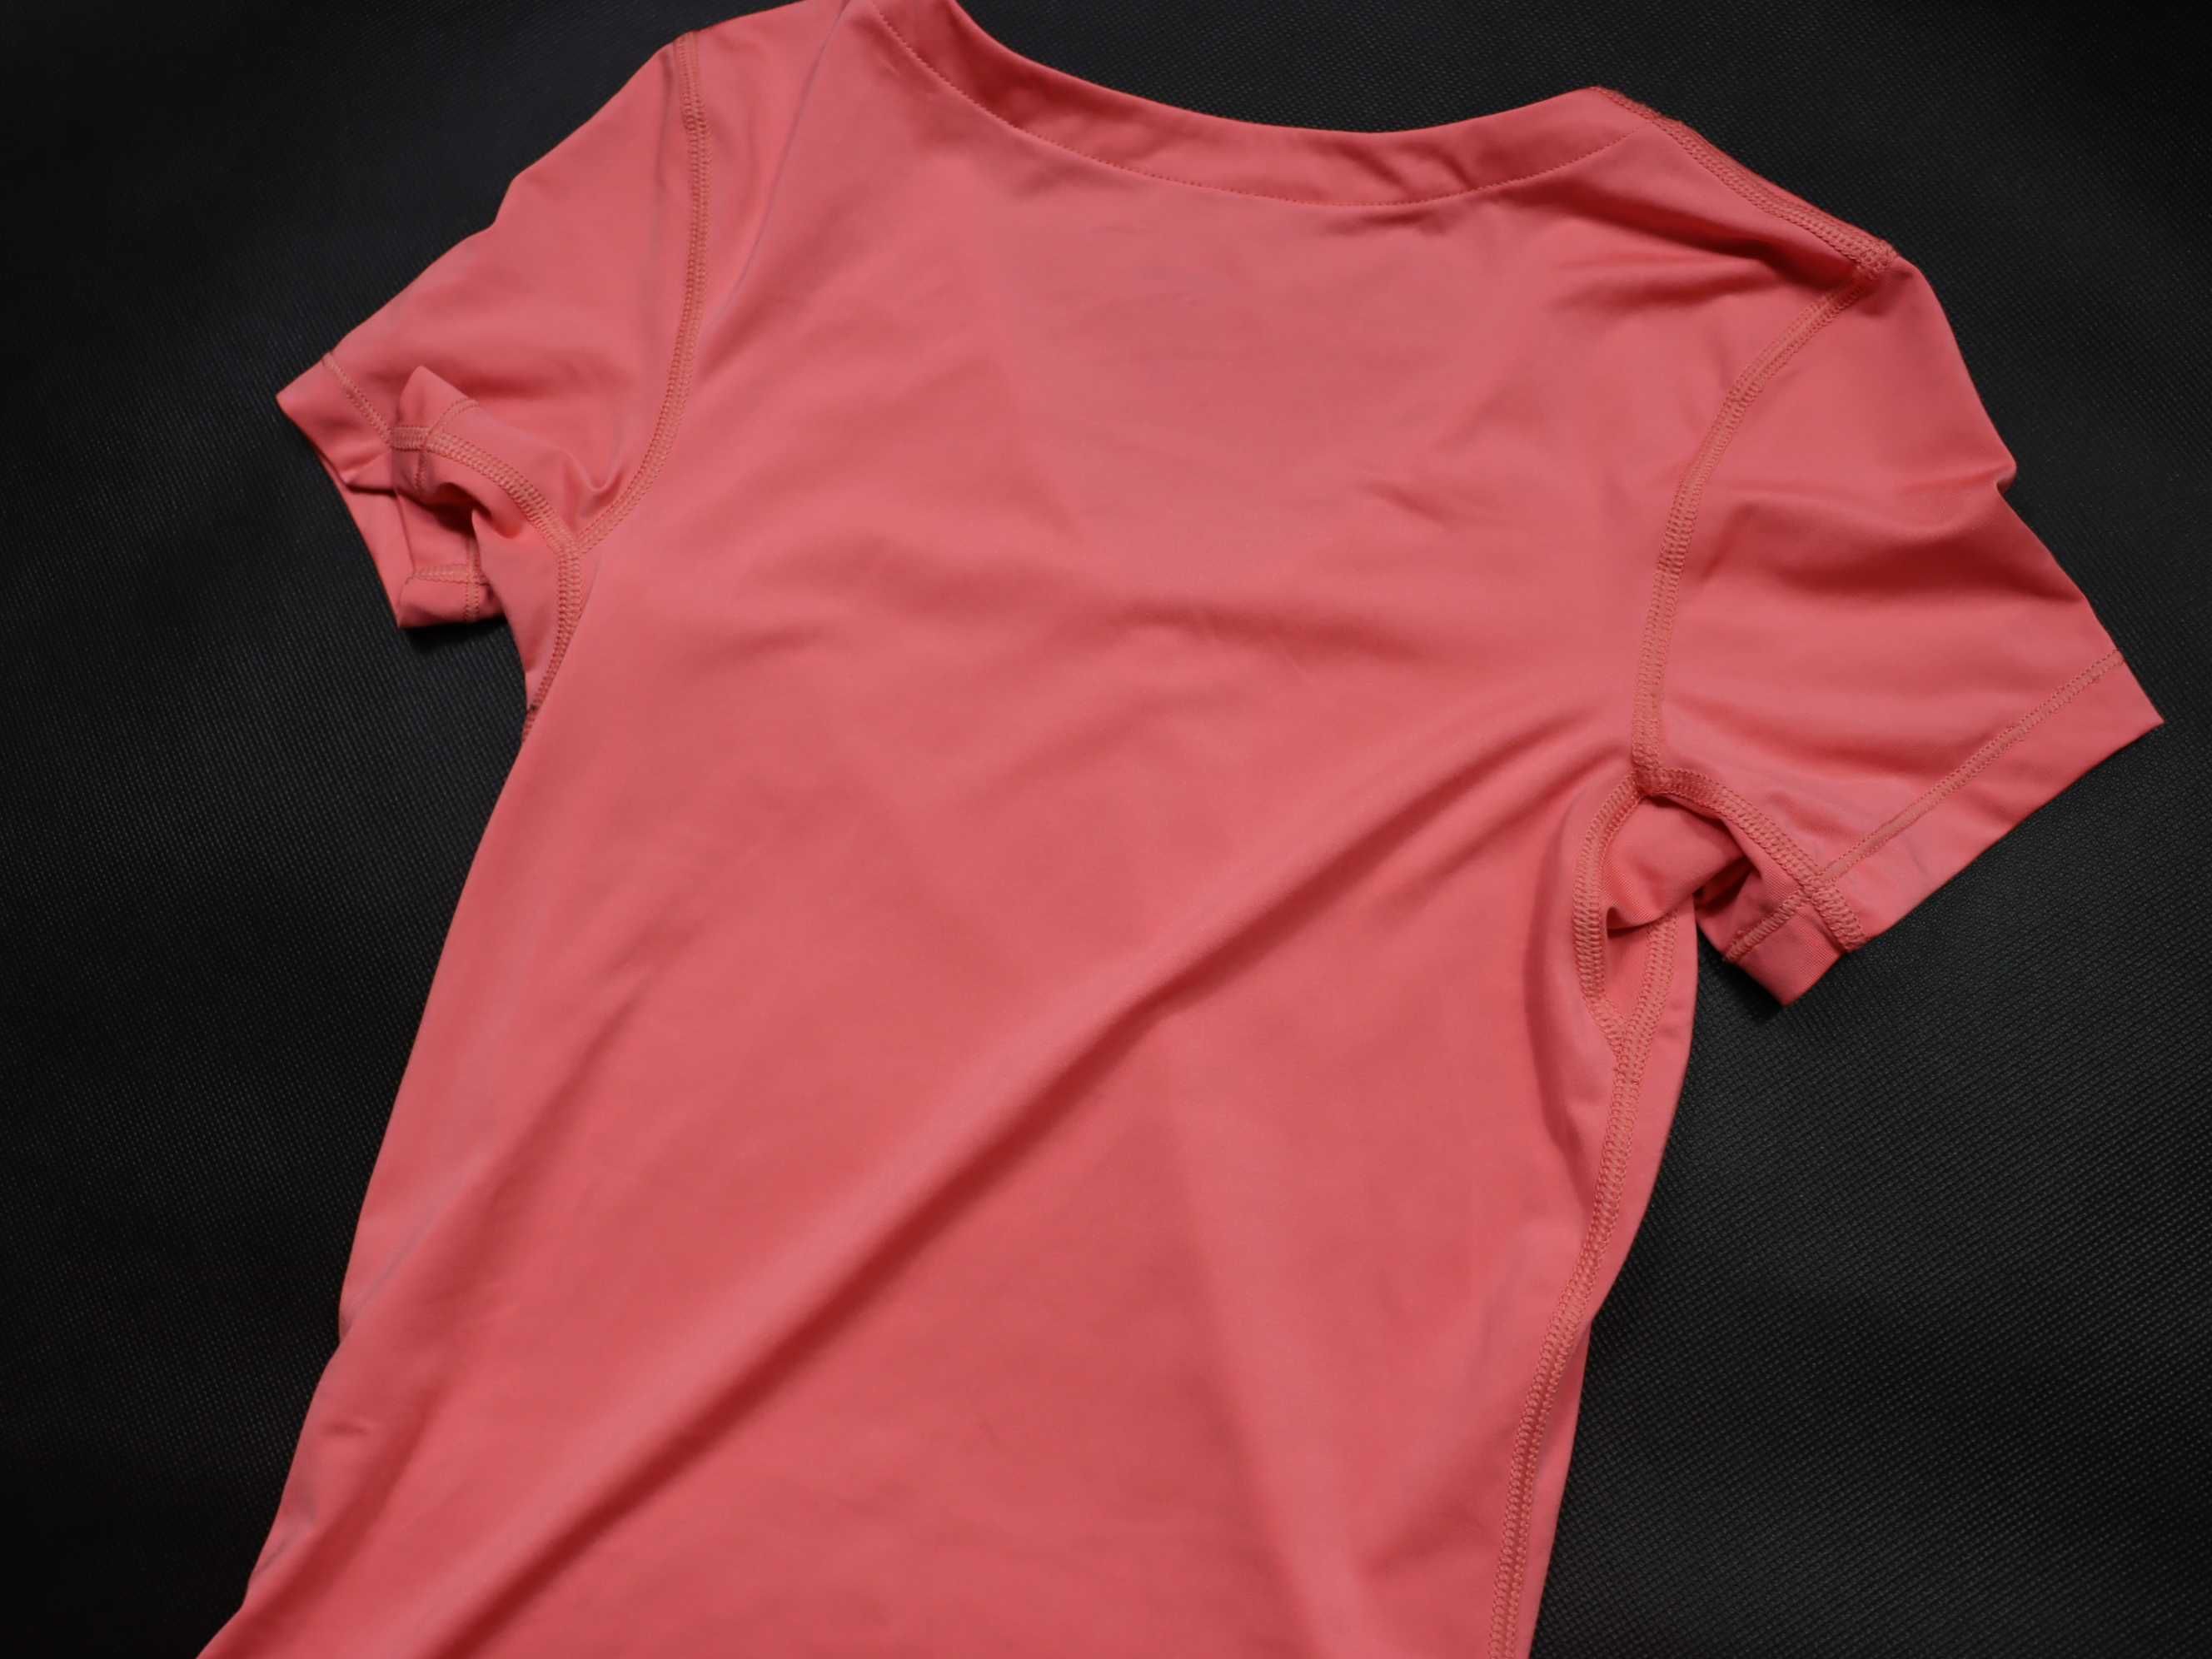 Nike Pro koszulka kompresyjna dopasowana damska sportowa sukienka XS